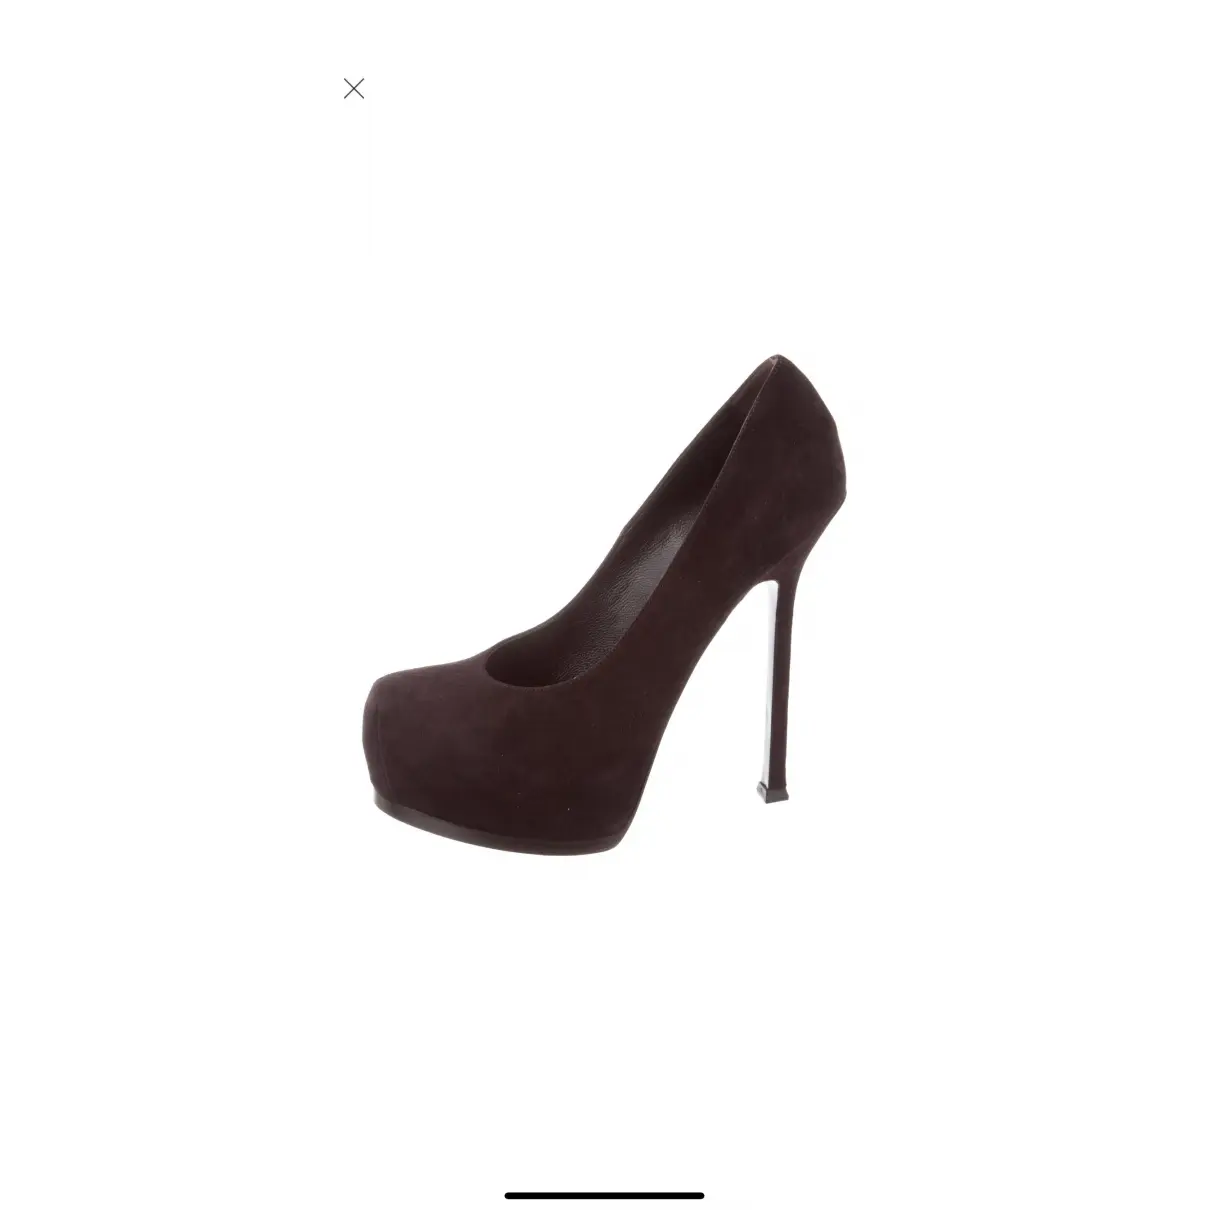 Buy Yves Saint Laurent Trib Too heels online